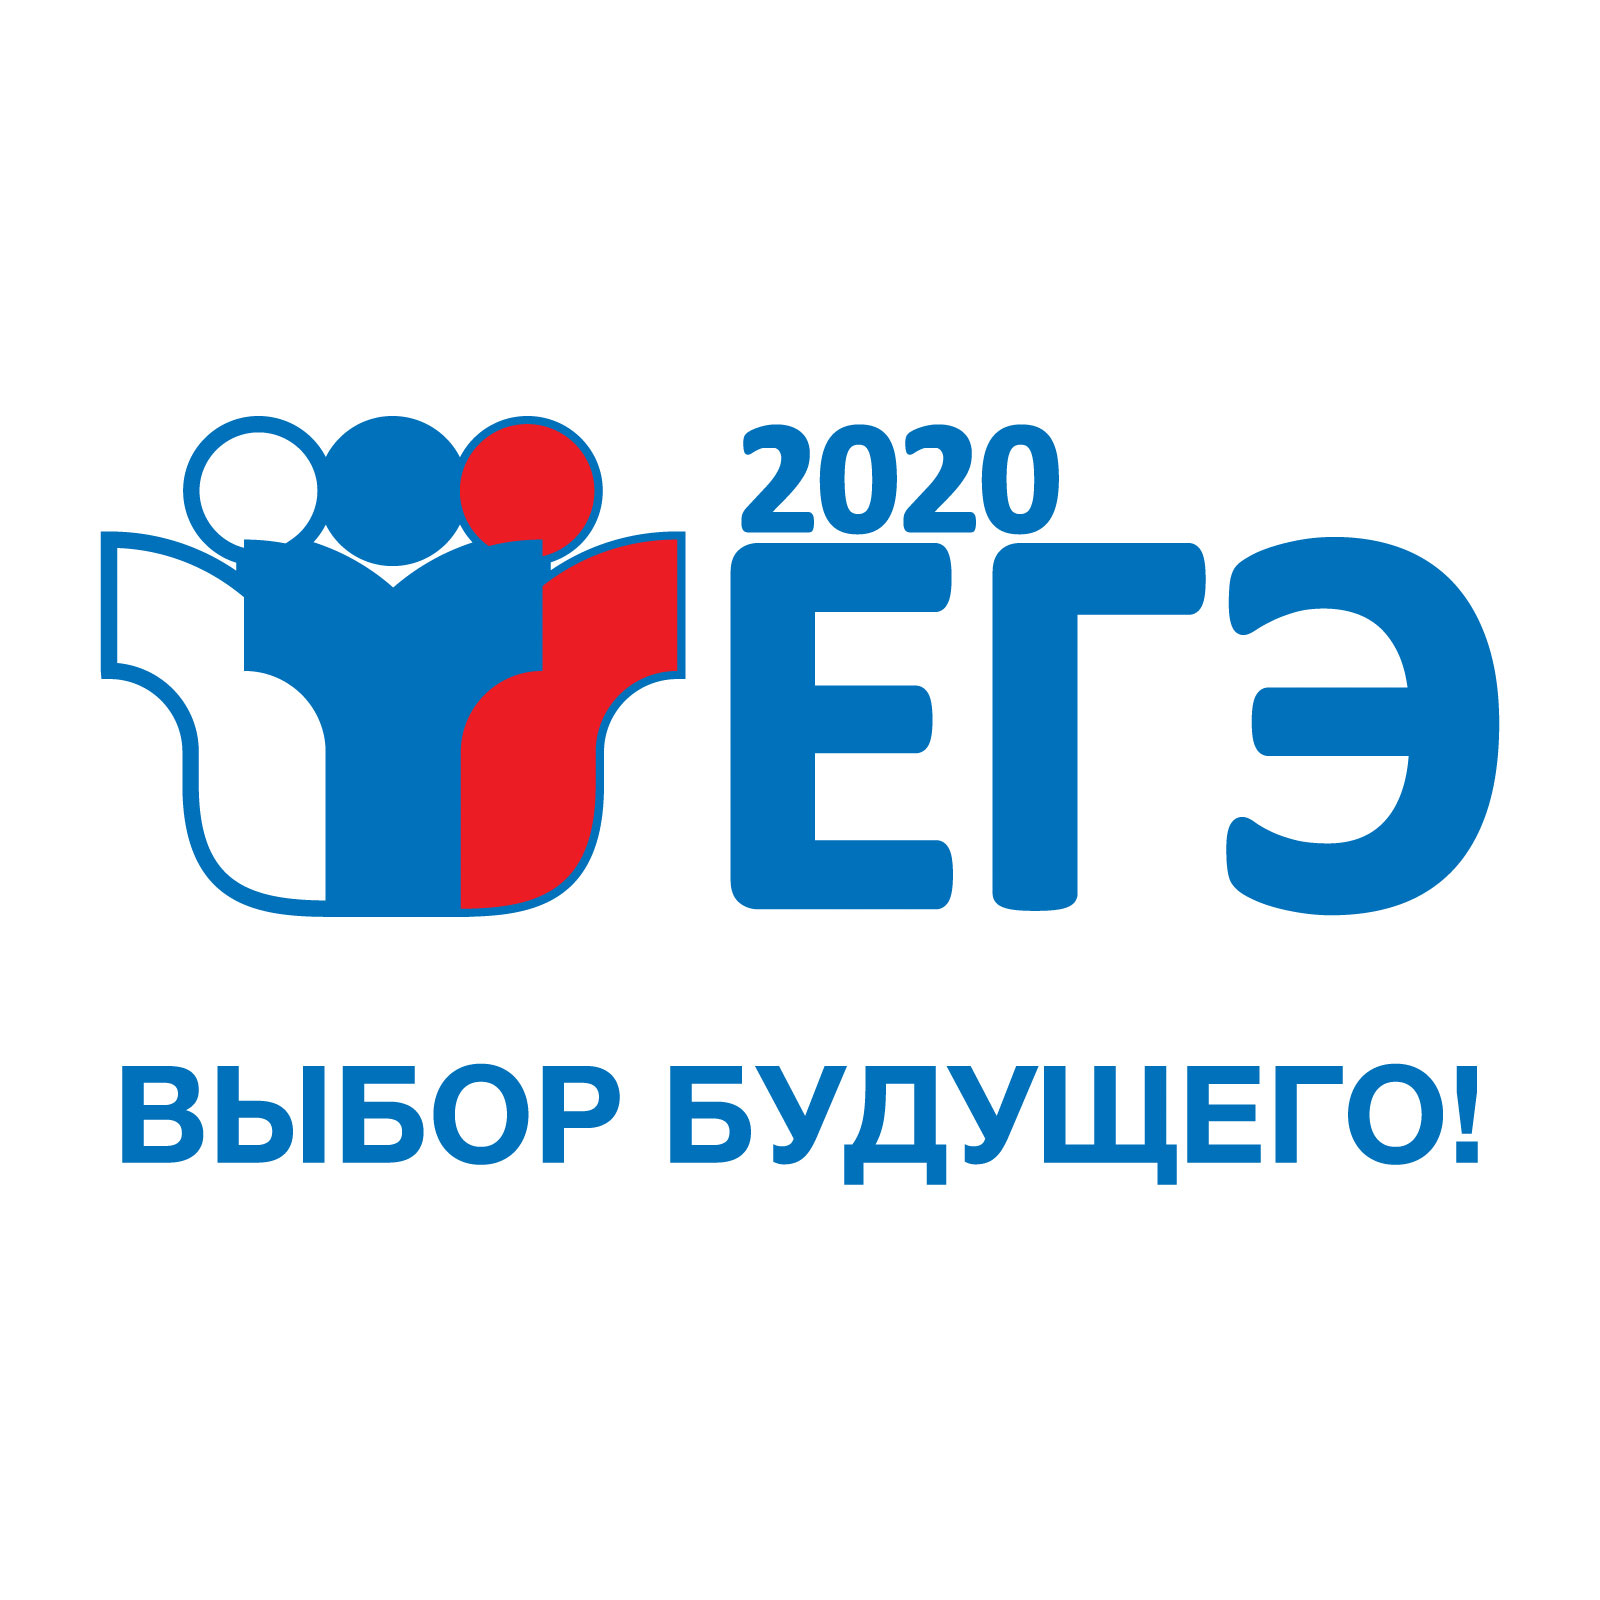 ЕГЭ 2020 - сдаём успешно!